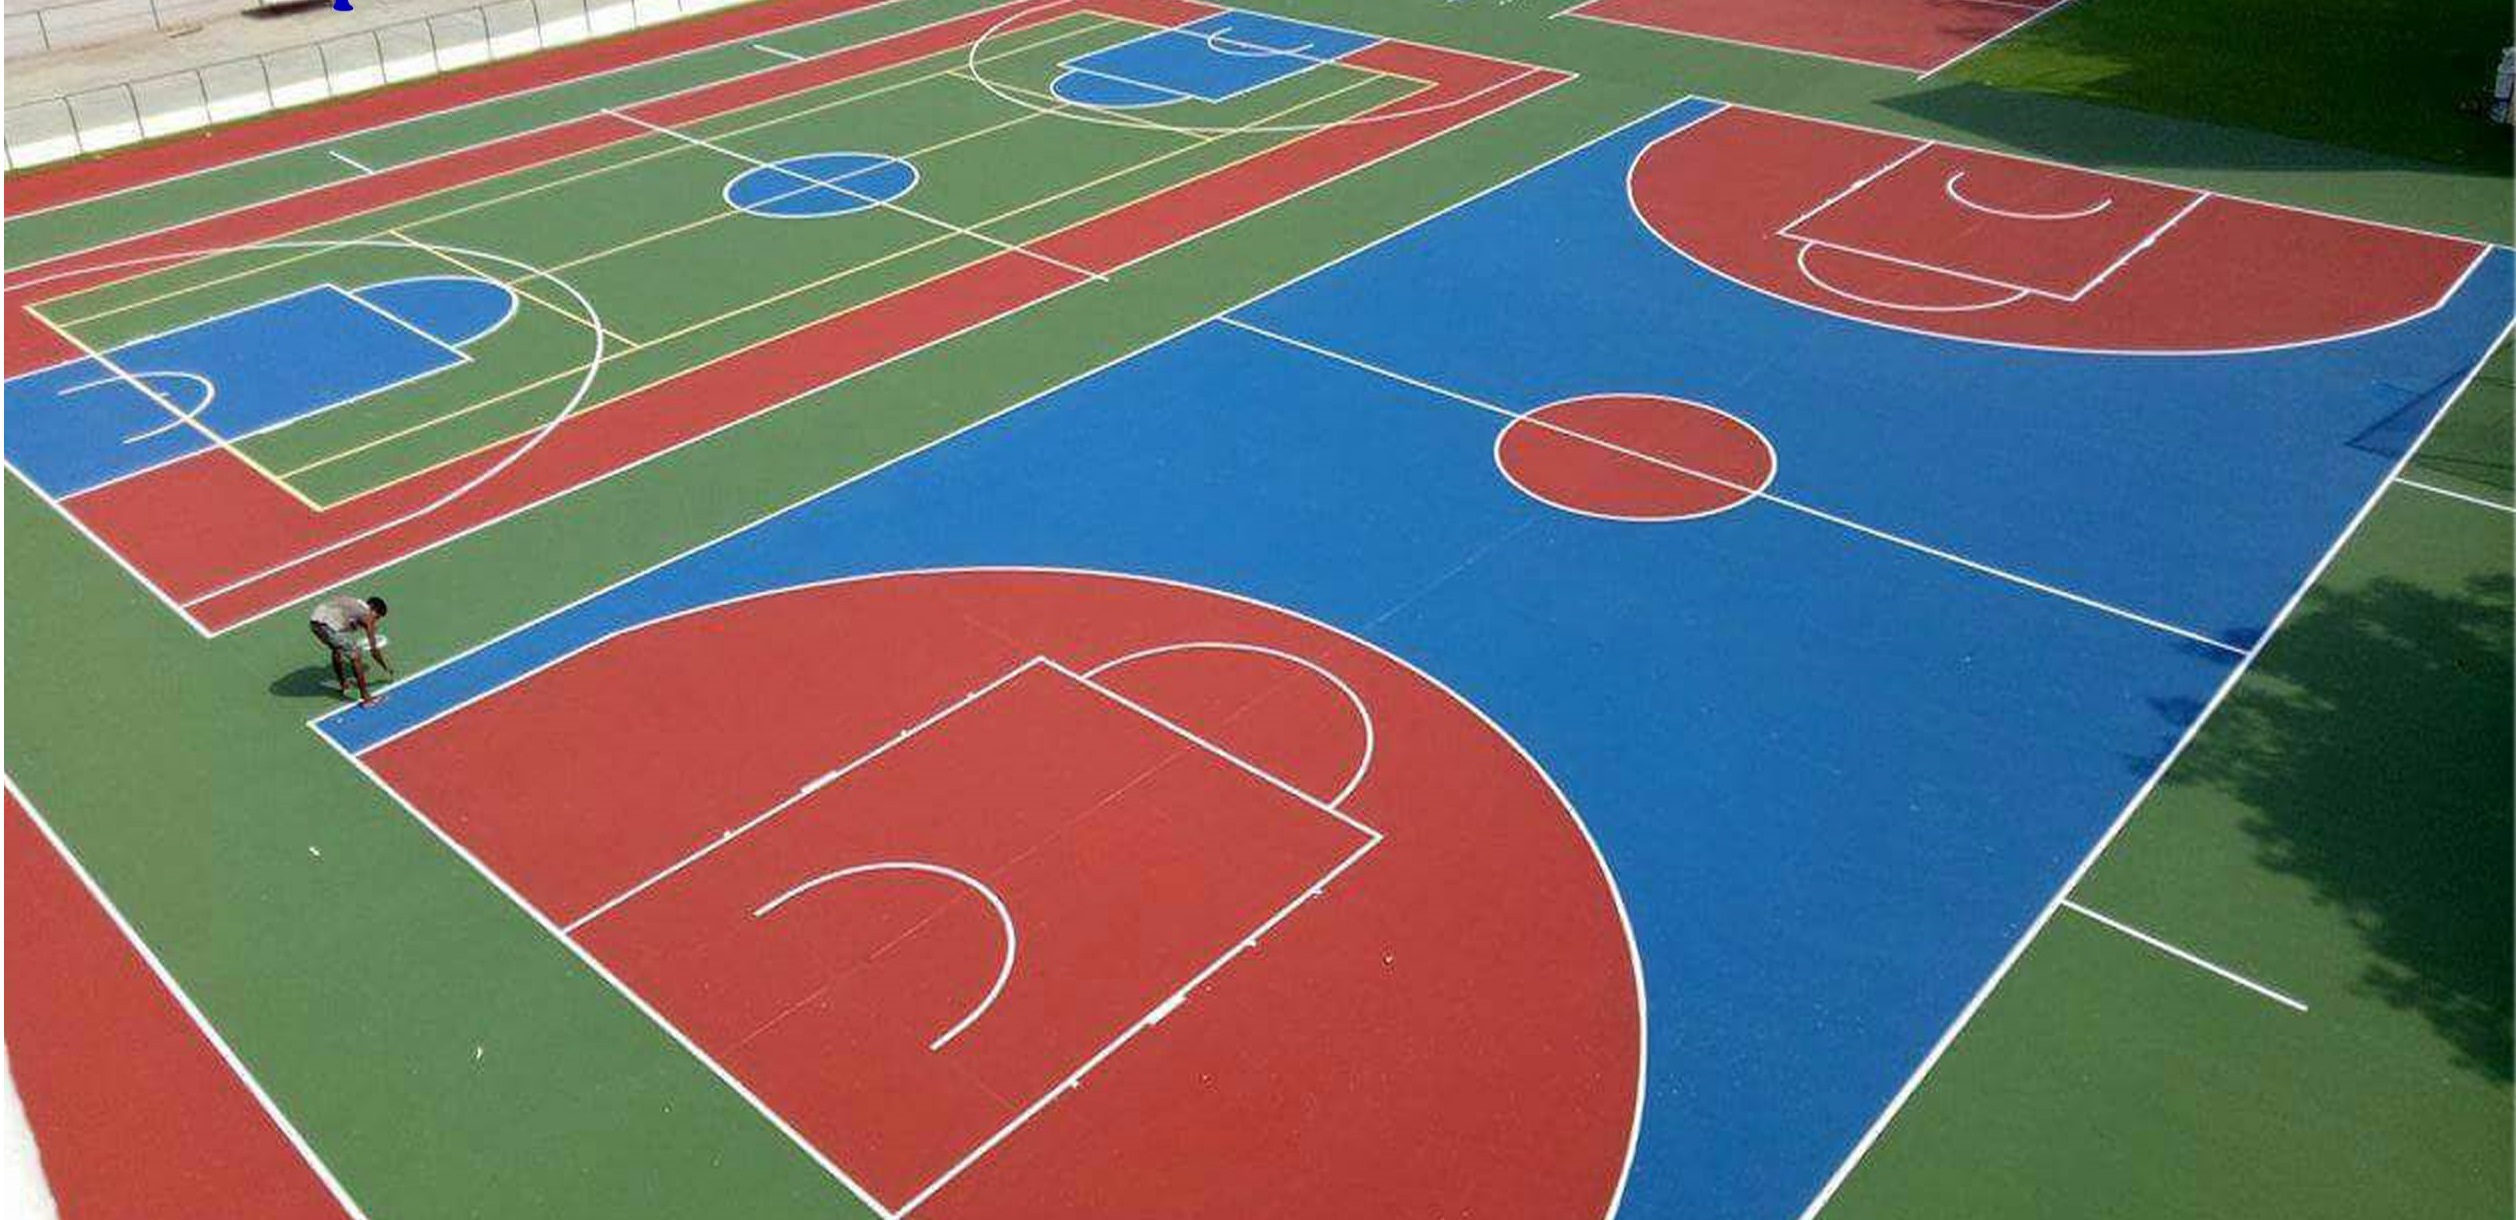 Thảm bóng rổ được sử dụng ngày một phổ biến tại các sân bóng